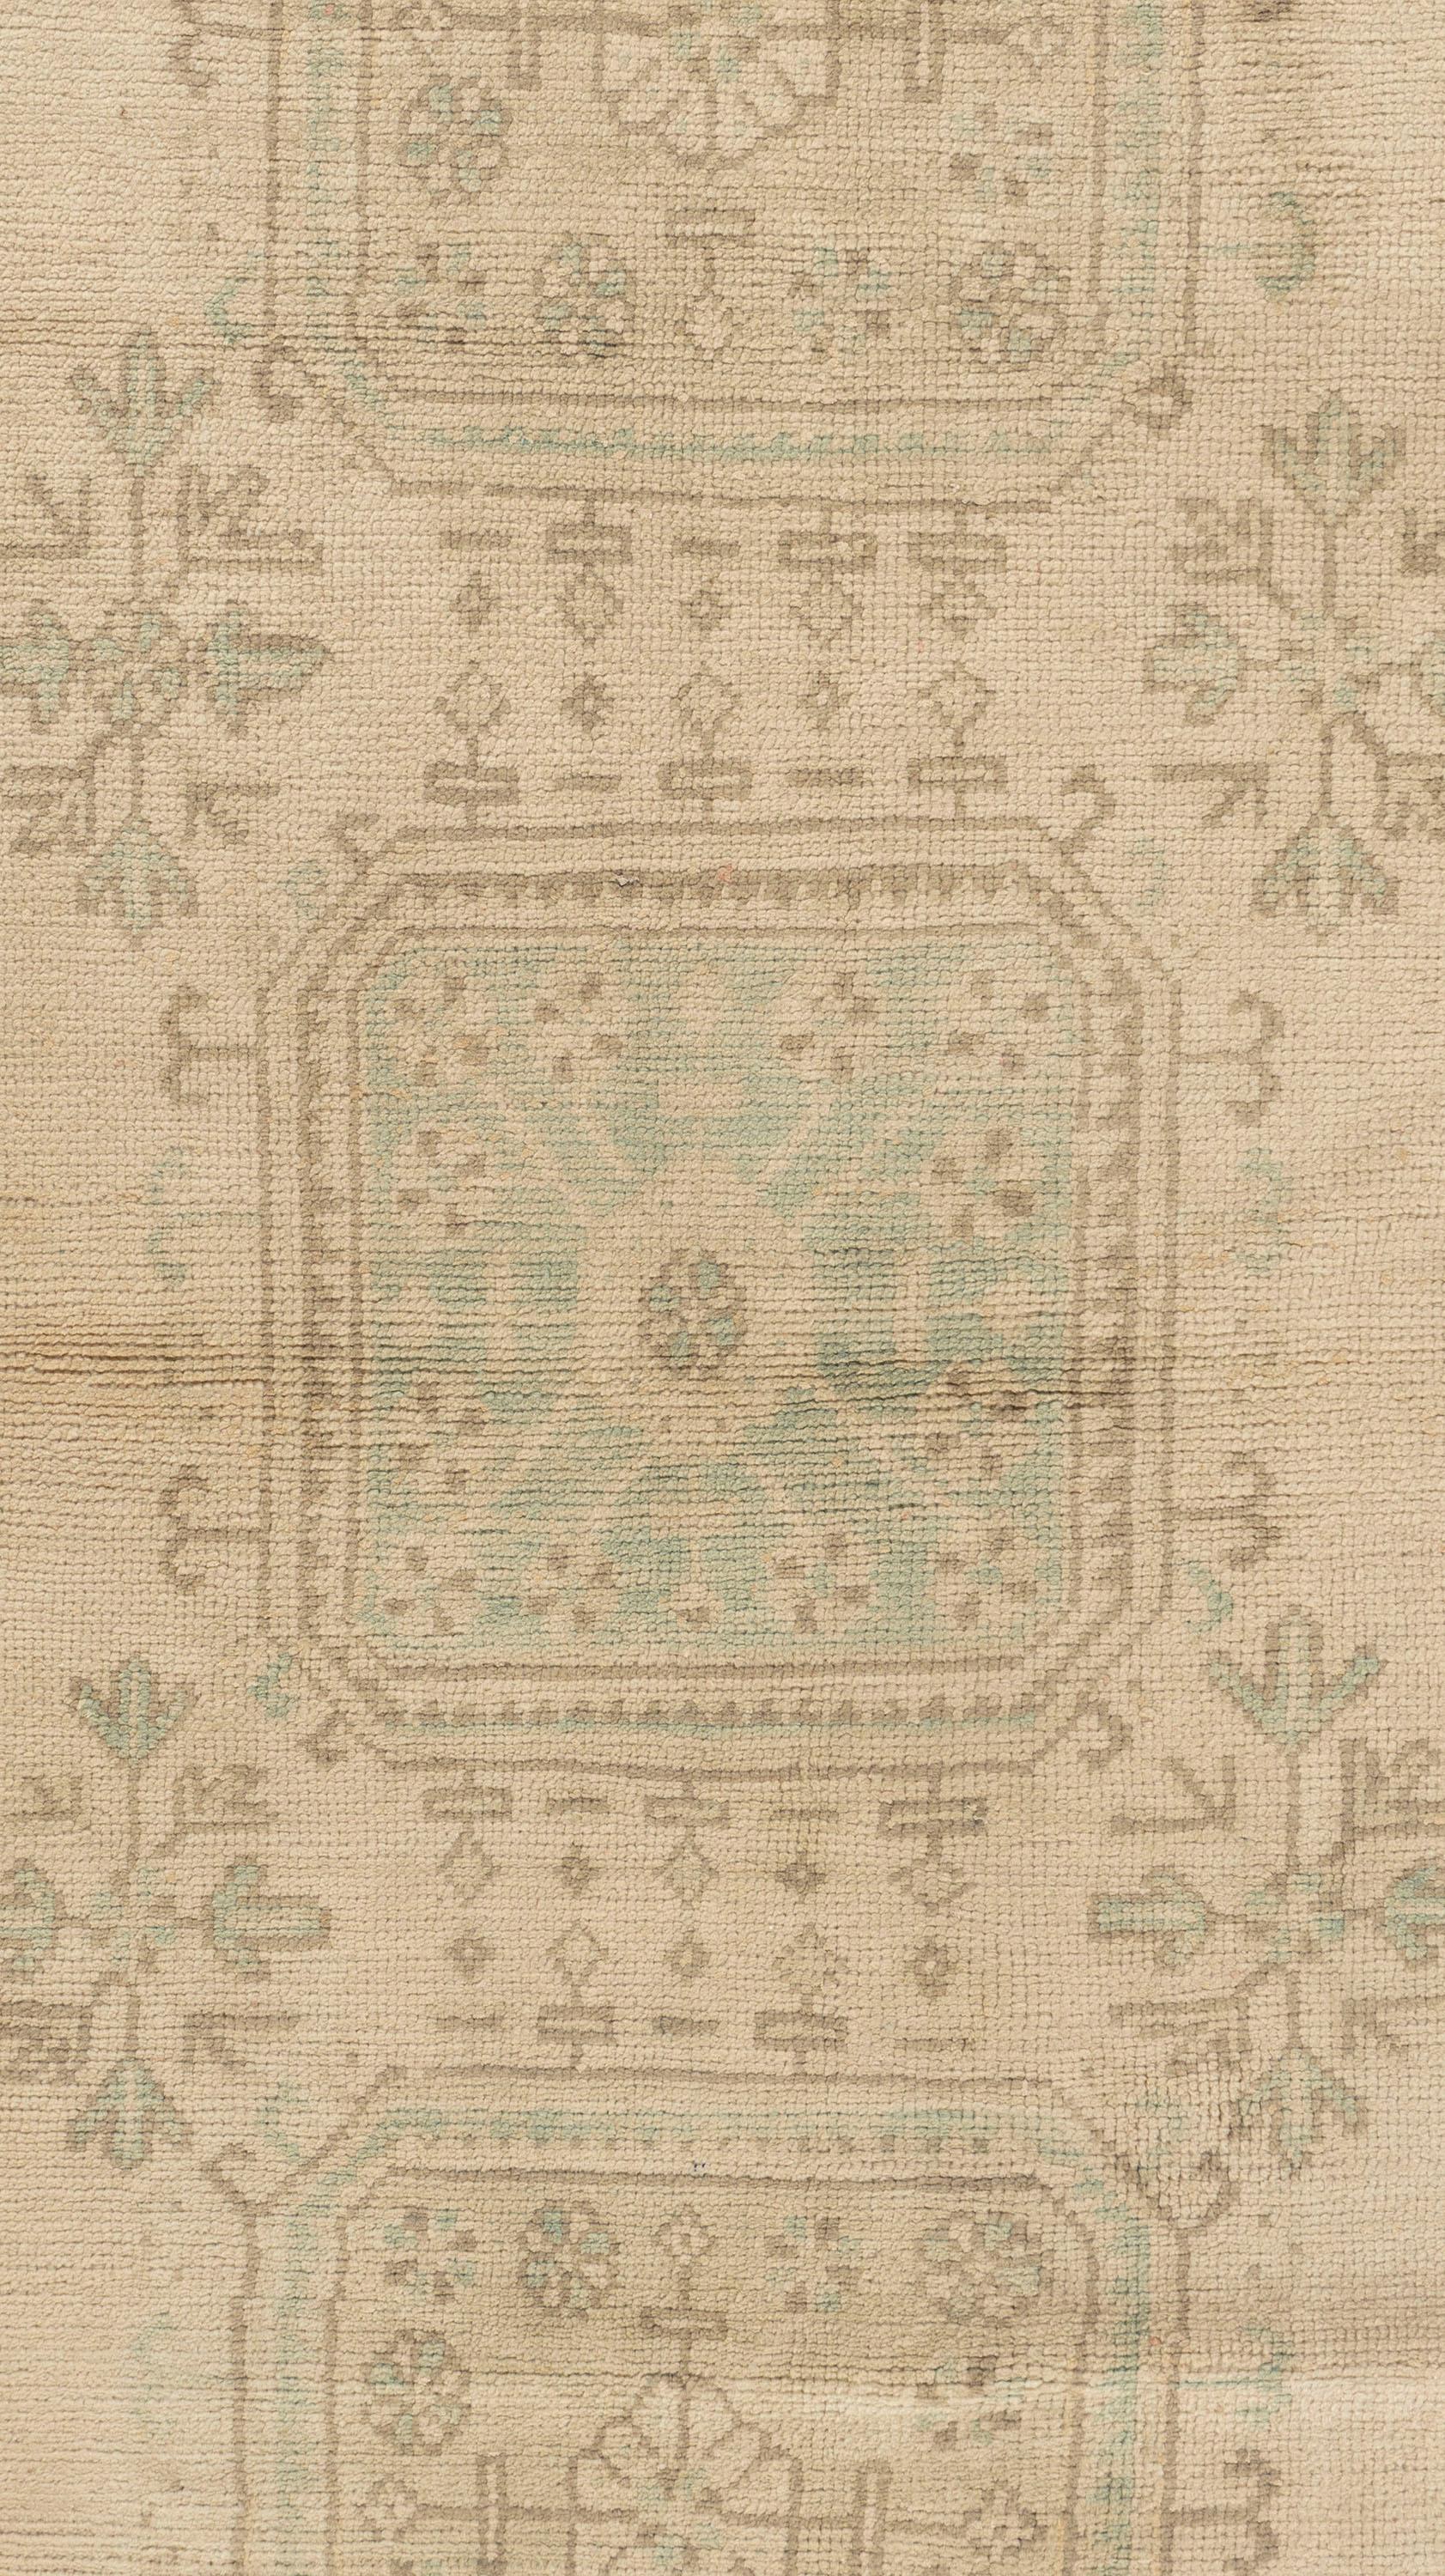 Vintage Turc Oushak Runne 3'3 X 11'4. Ces tapis attrayants conviennent à une grande variété d'endroits, mais l'effet significatif des Oushaks est qu'ils rassemblent l'espace, le rendant confortable et chaleureux. La technique artistique de tissage